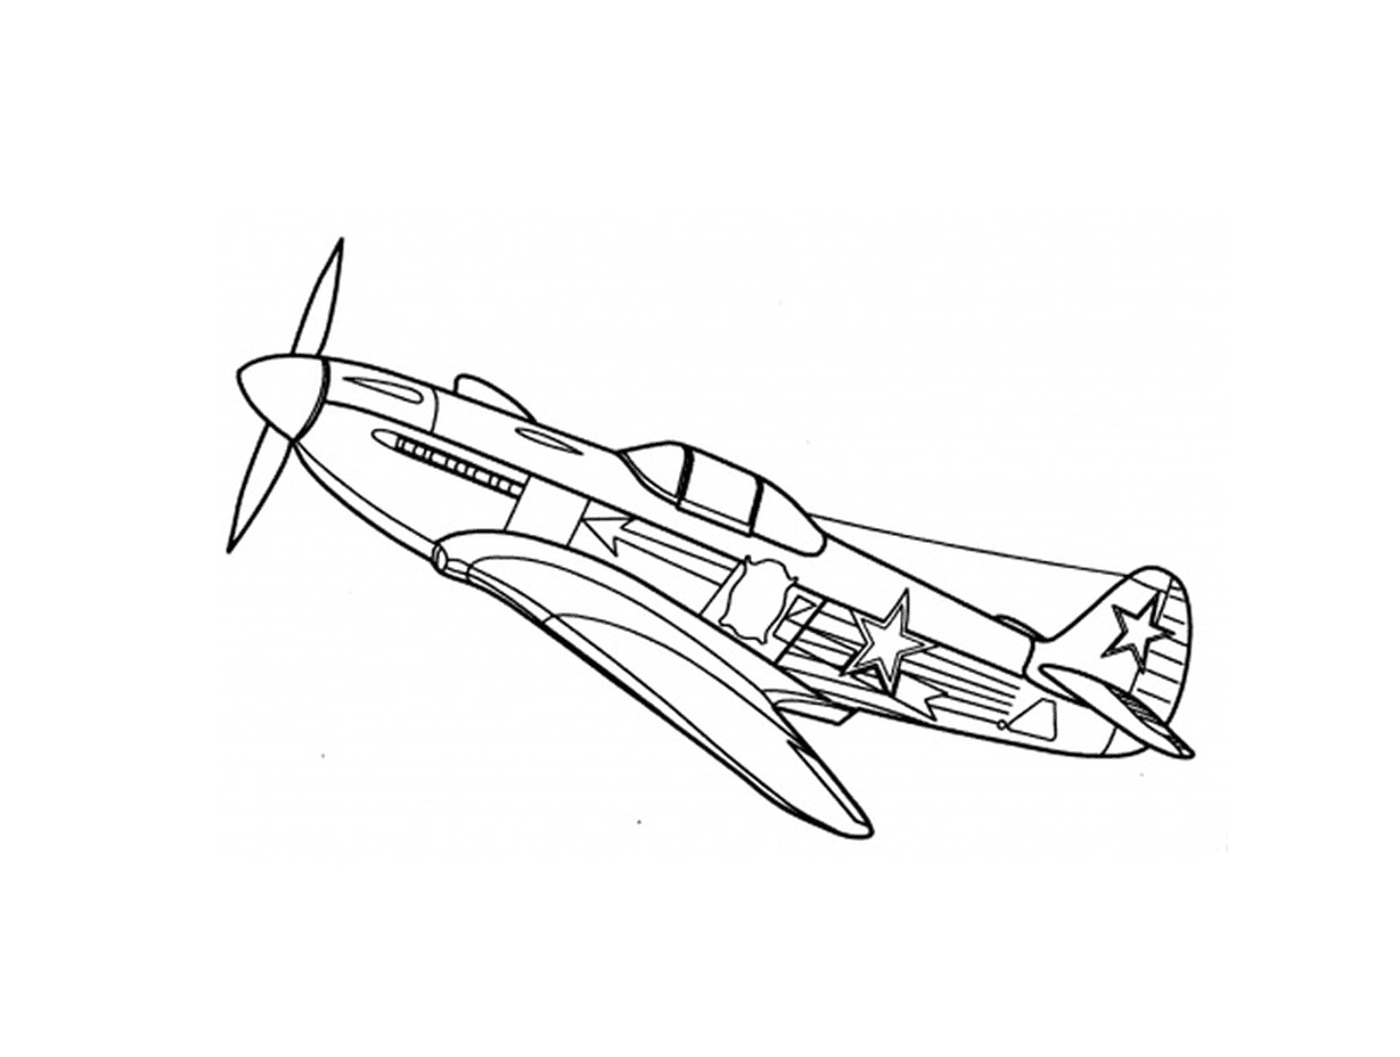  Ein Kriegsflugzeug wird gezeichnet 